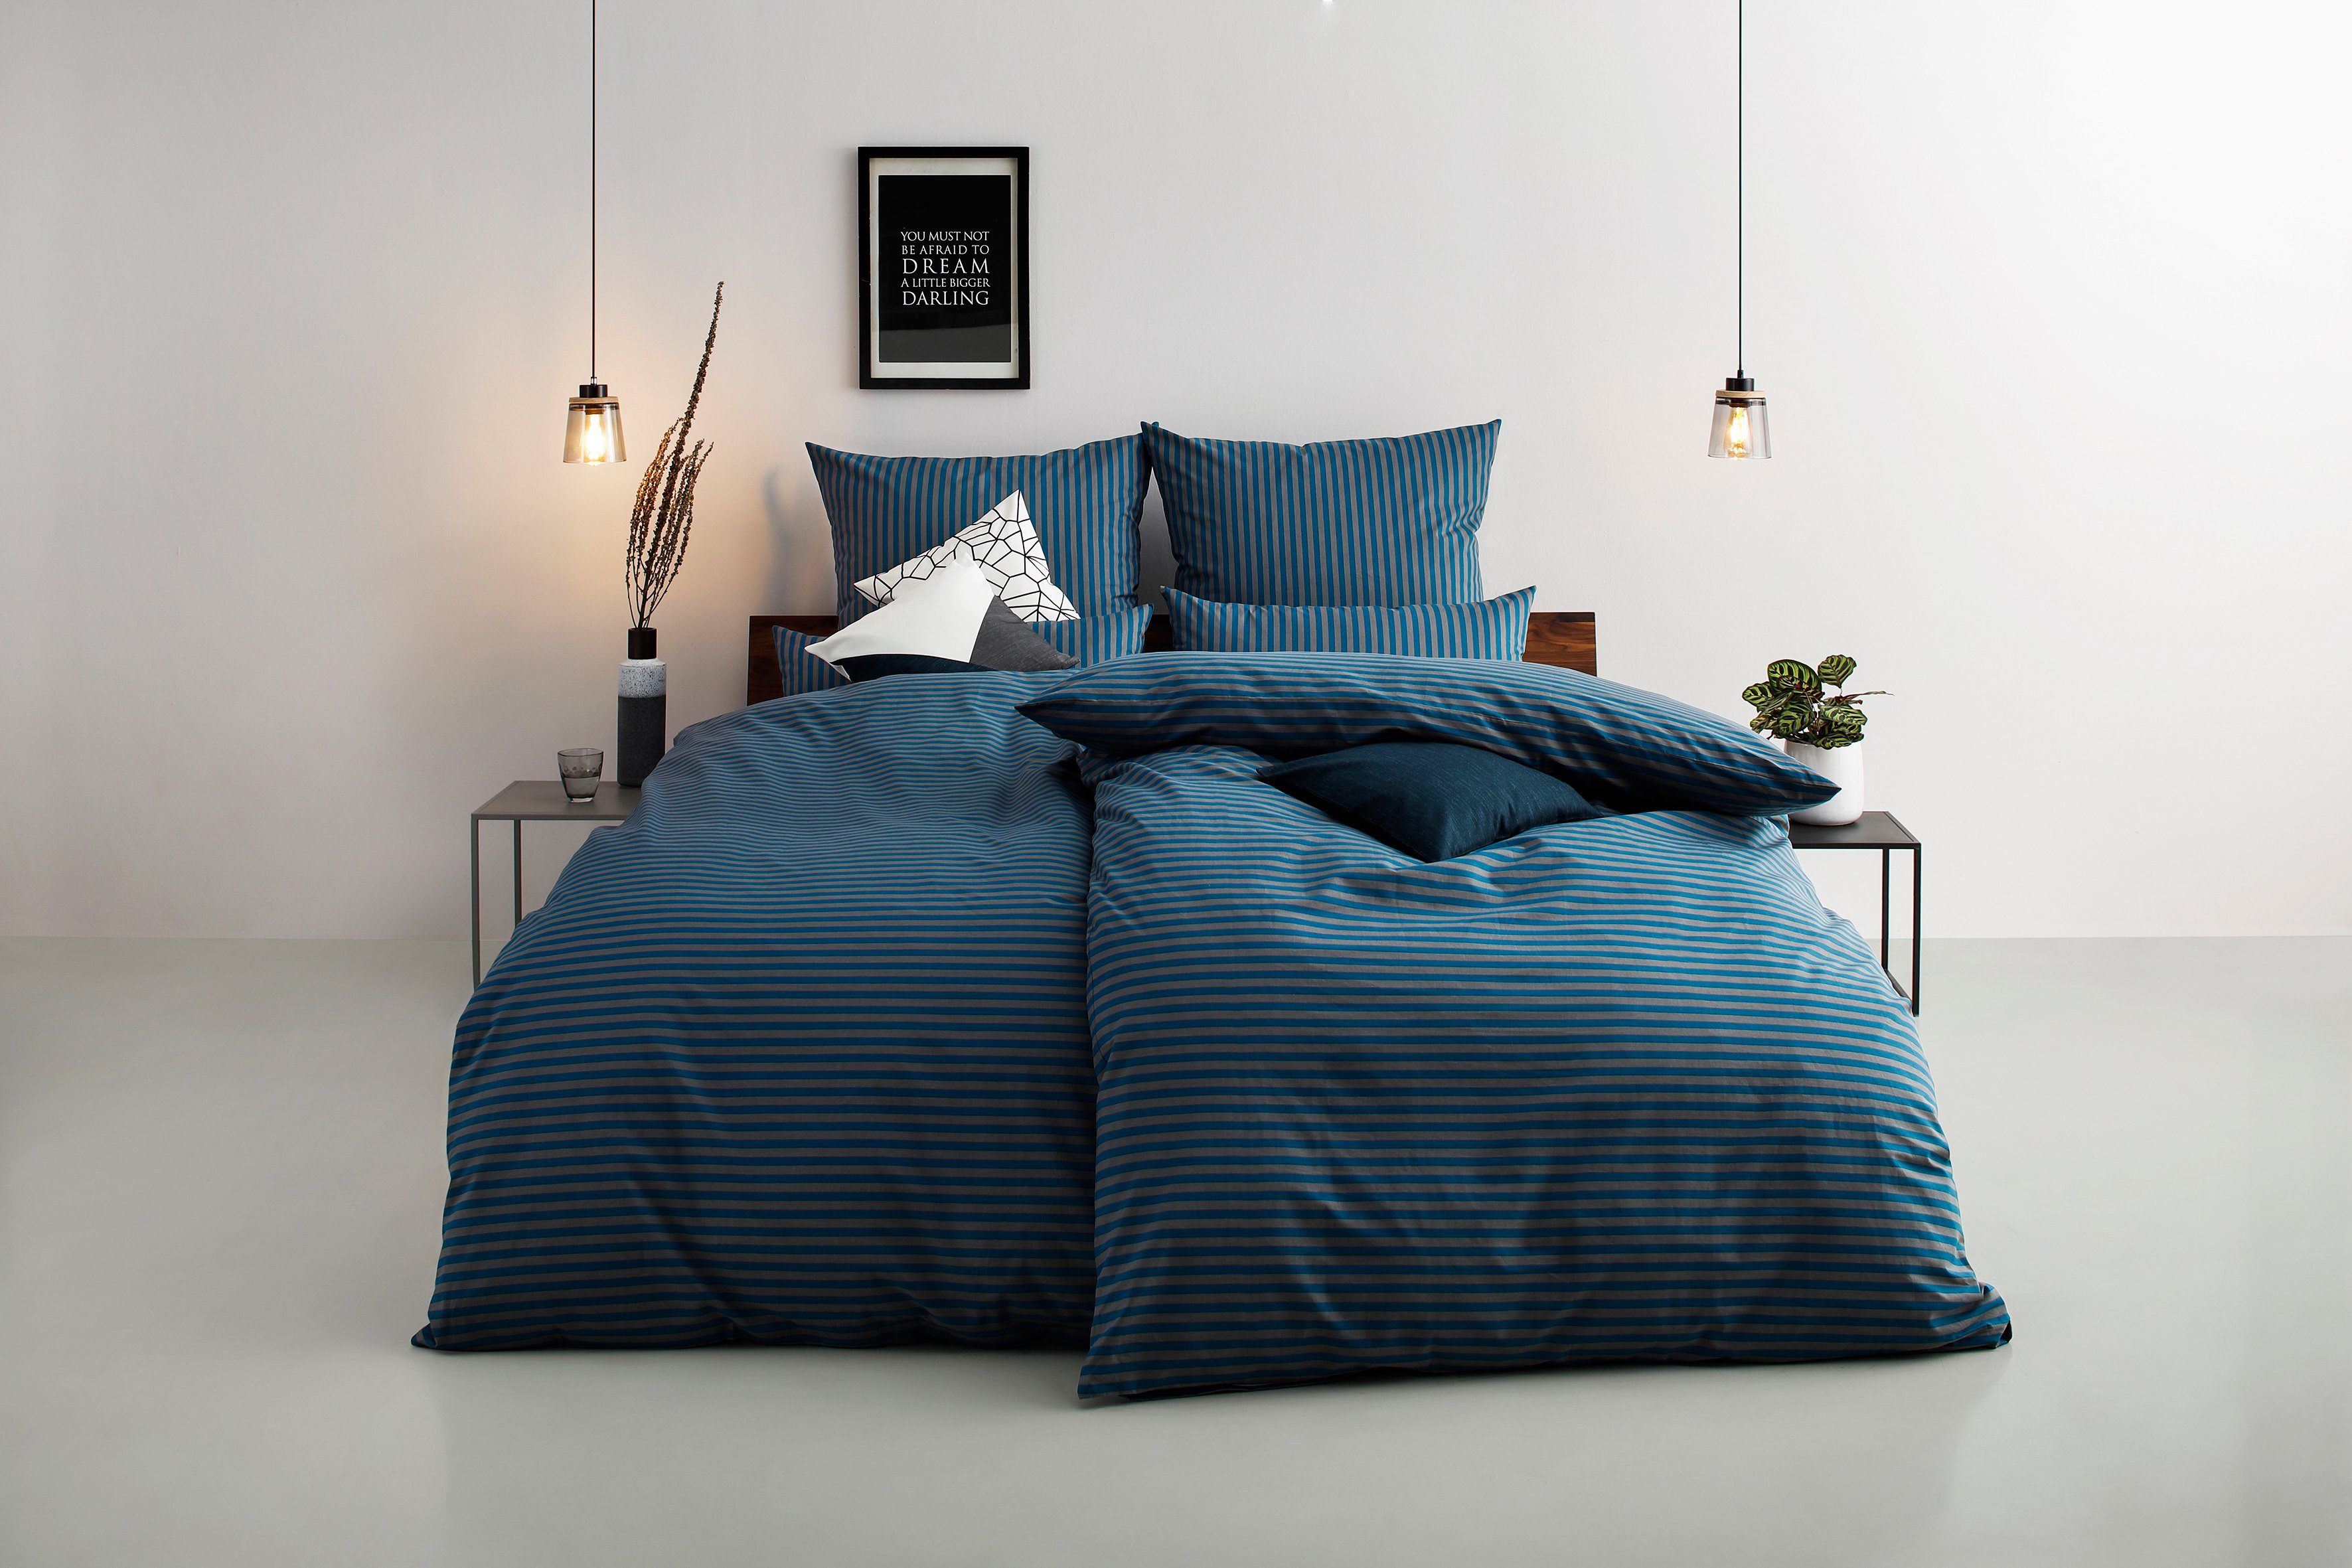 Bettwäsche Jassen in Gr. 135x200 oder 155x220 cm, Bruno Banani, Renforcé, 2  teilig, moderne Bettwäsche aus Baumwolle, Bettwäsche mit Streifen-Design